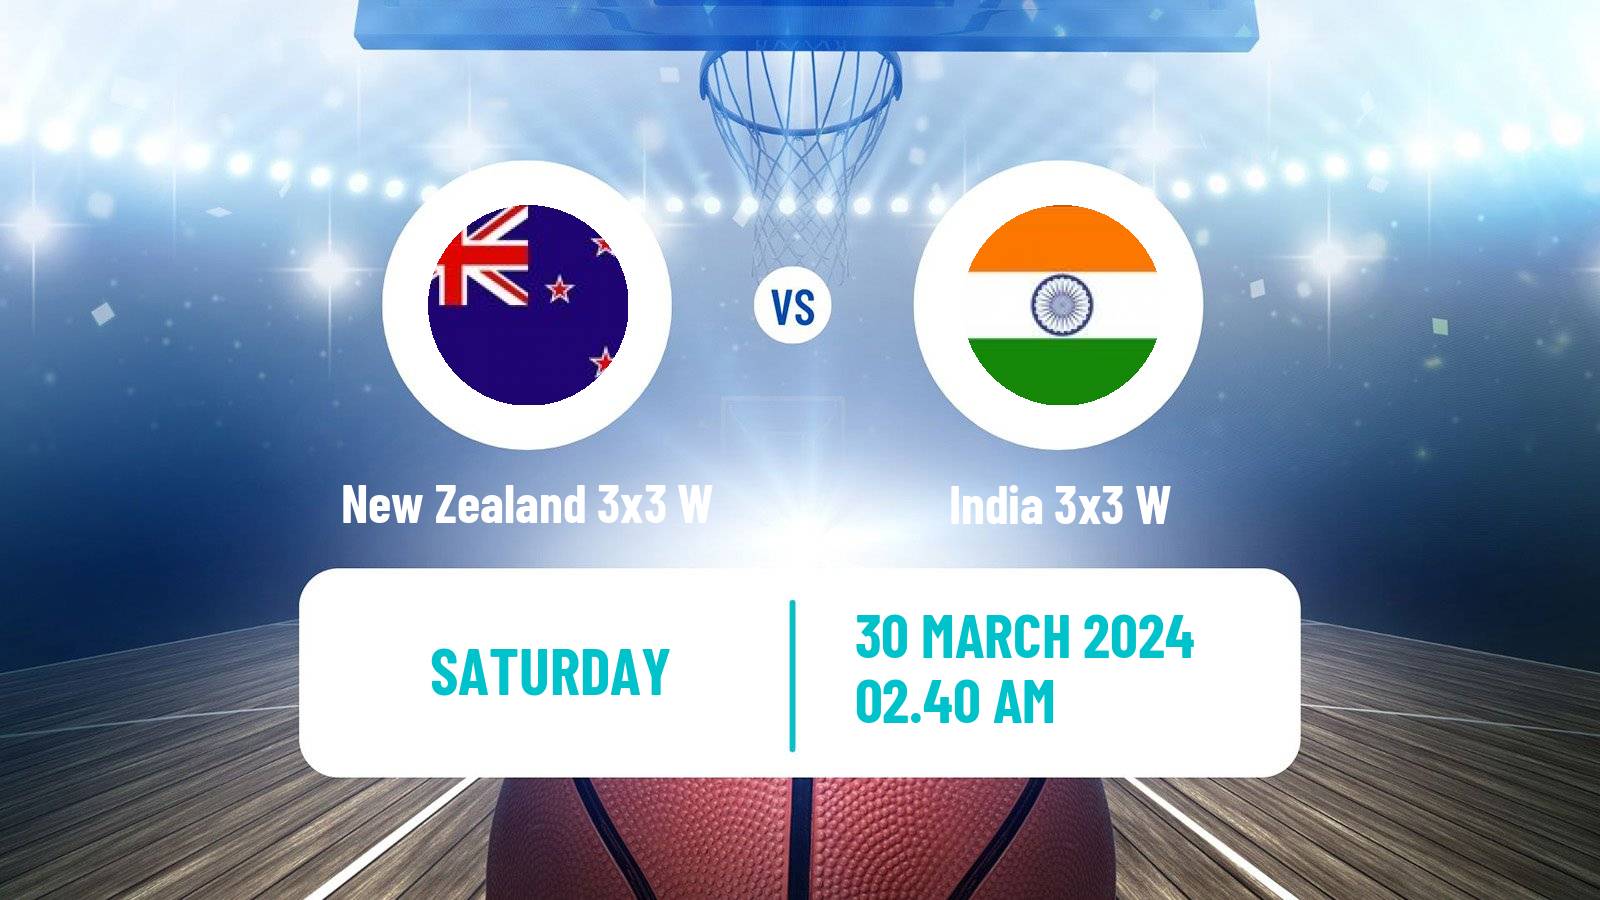 Basketball Asia Cup 3x3 Women New Zealand 3x3 W - India 3x3 W